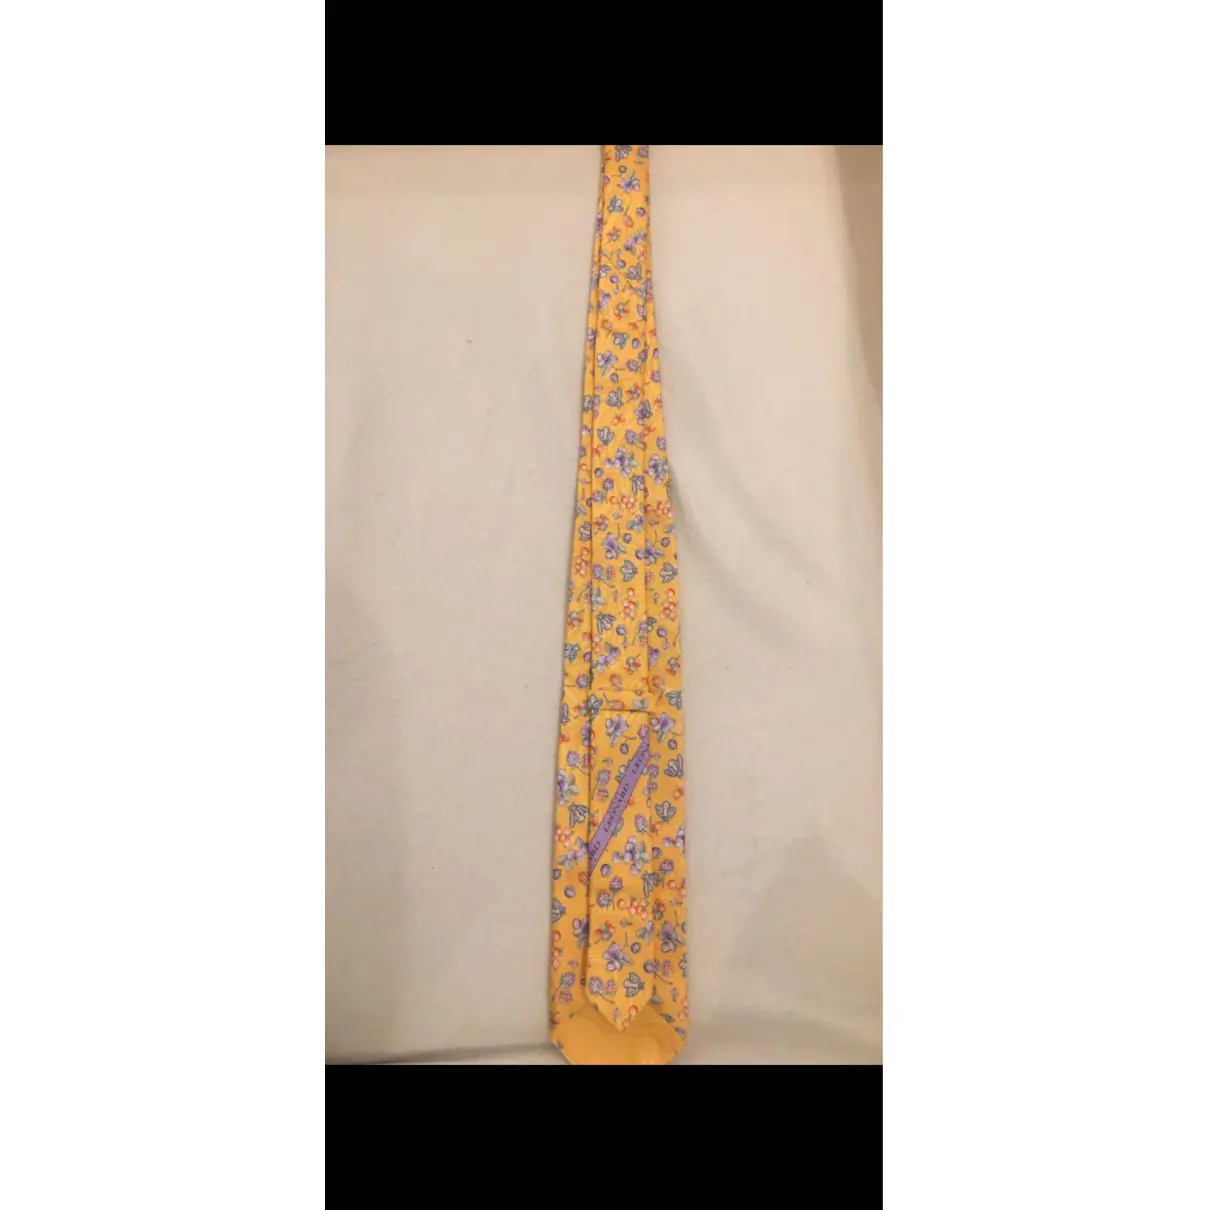 Buy Leonard Silk tie online